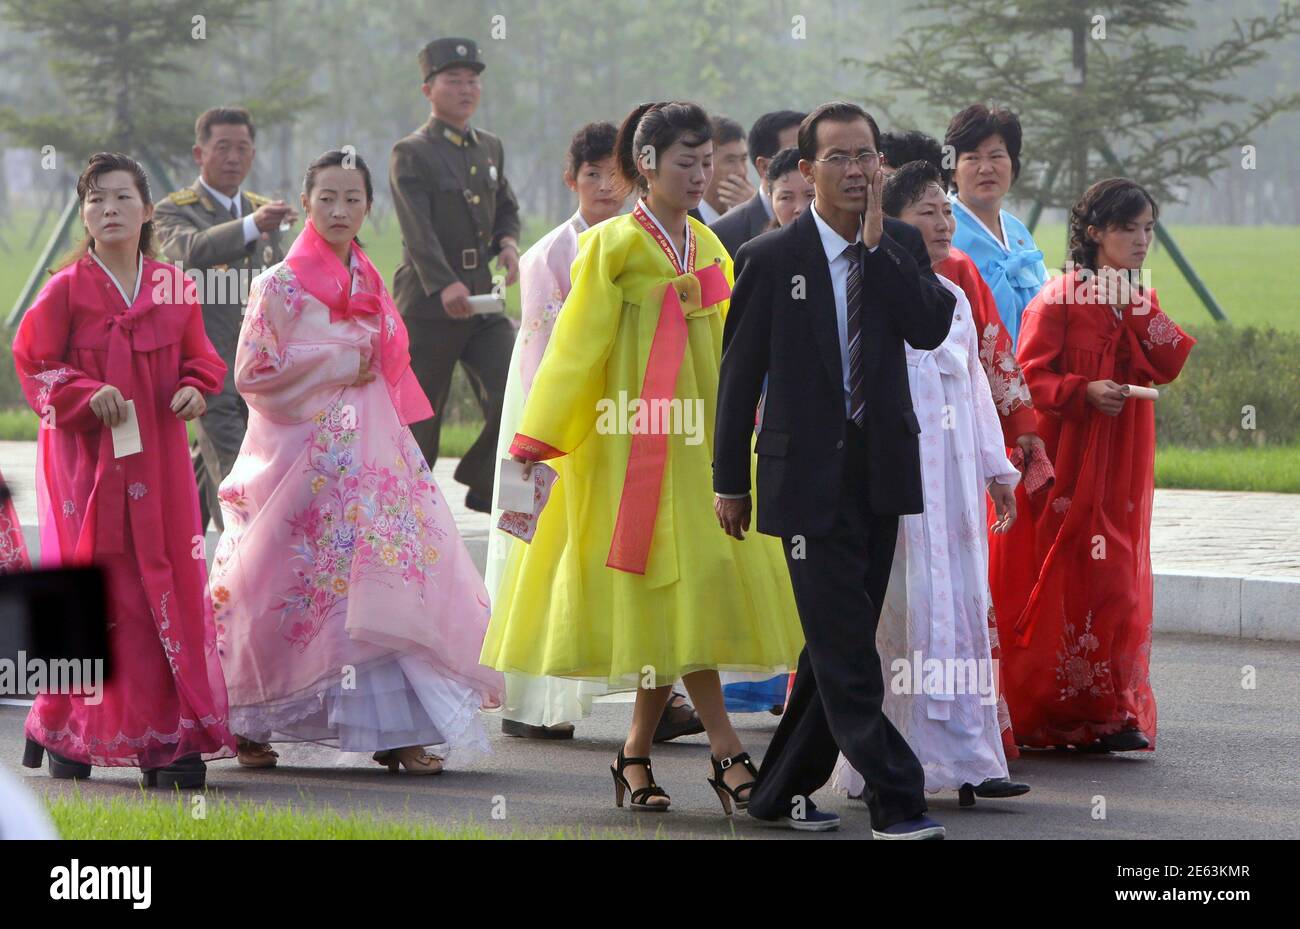 Mujeres norcoreanas vestidas con trajes tradicionales y soldados llegan para la ceremonia de apertura del Cementerio de combatientes caídos del Ejército Popular Coreano (KPA) en Pyongyang 25 de julio de 2013, Como parte de las celebraciones antes del 60 aniversario de la firma de una tregua en la Guerra de Corea de 1950-1953. REUTERS/Jason Lee (COREA DEL NORTE - Tags: ANIVERSARIO POLÍTICA MILITAR) Foto de stock